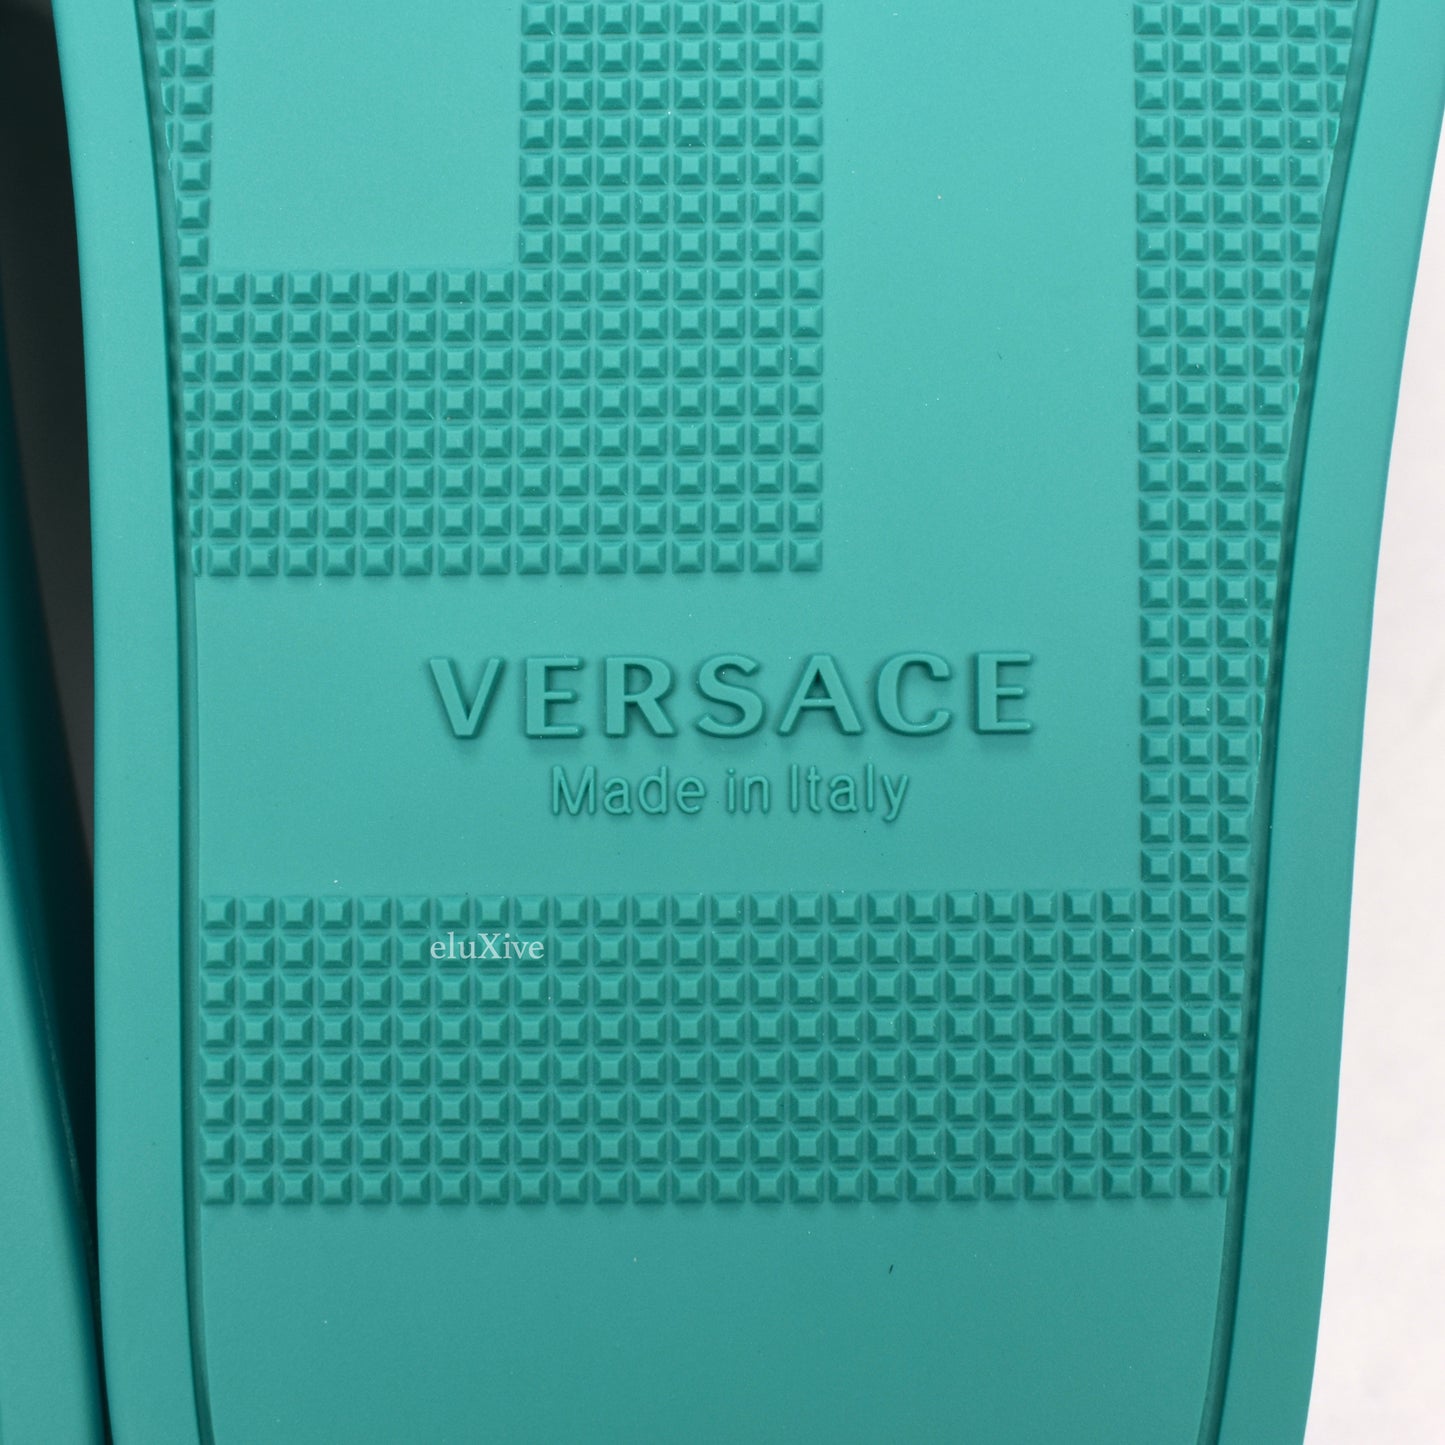 Versace - Turquoise Palazzo Medusa Pool Slides